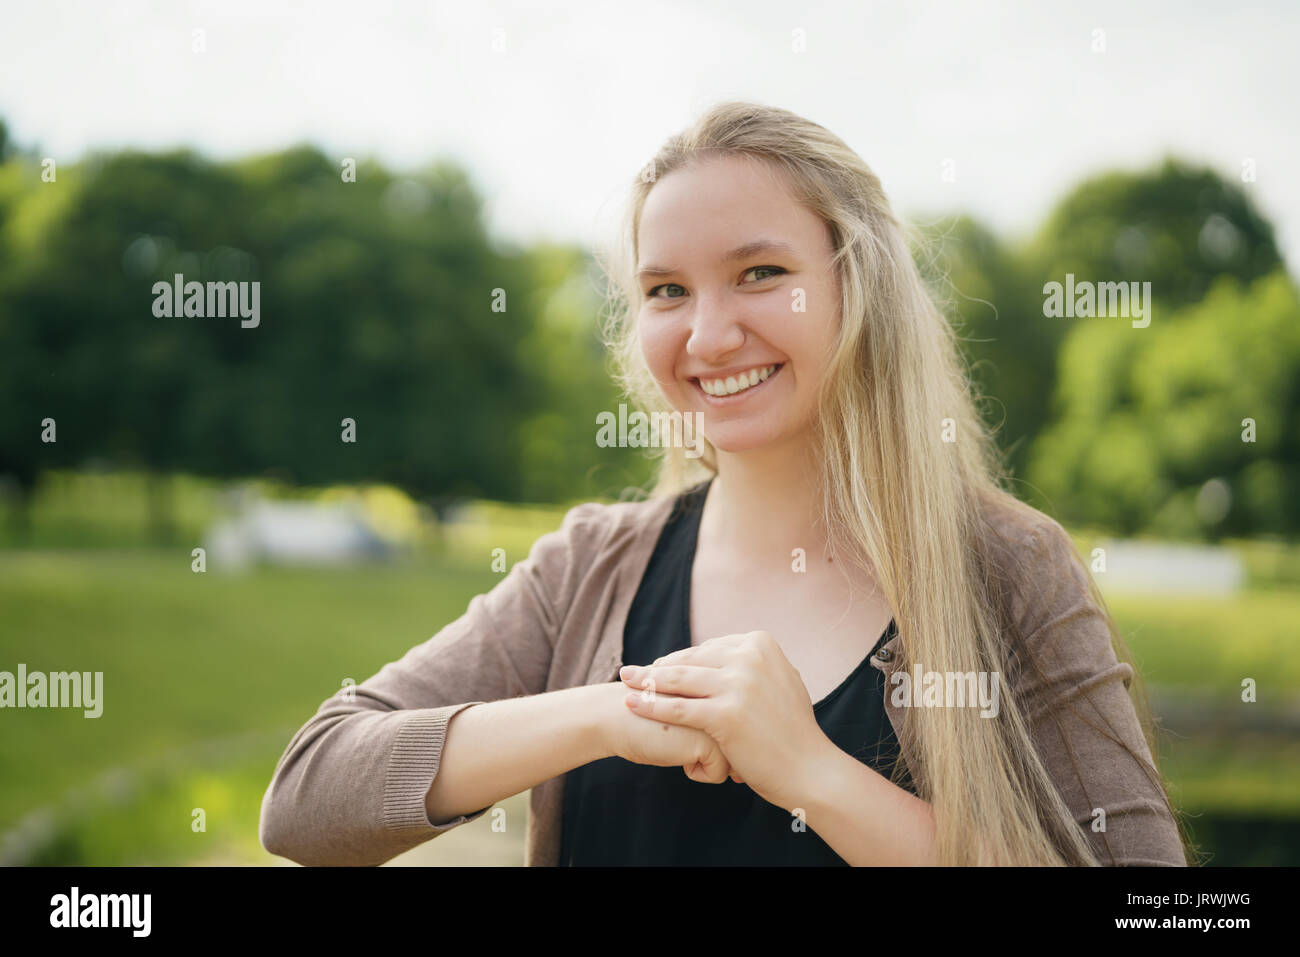 Jugendlich Mädchen lächelnd im Green Park in sonnigen Sommertag Stockfoto